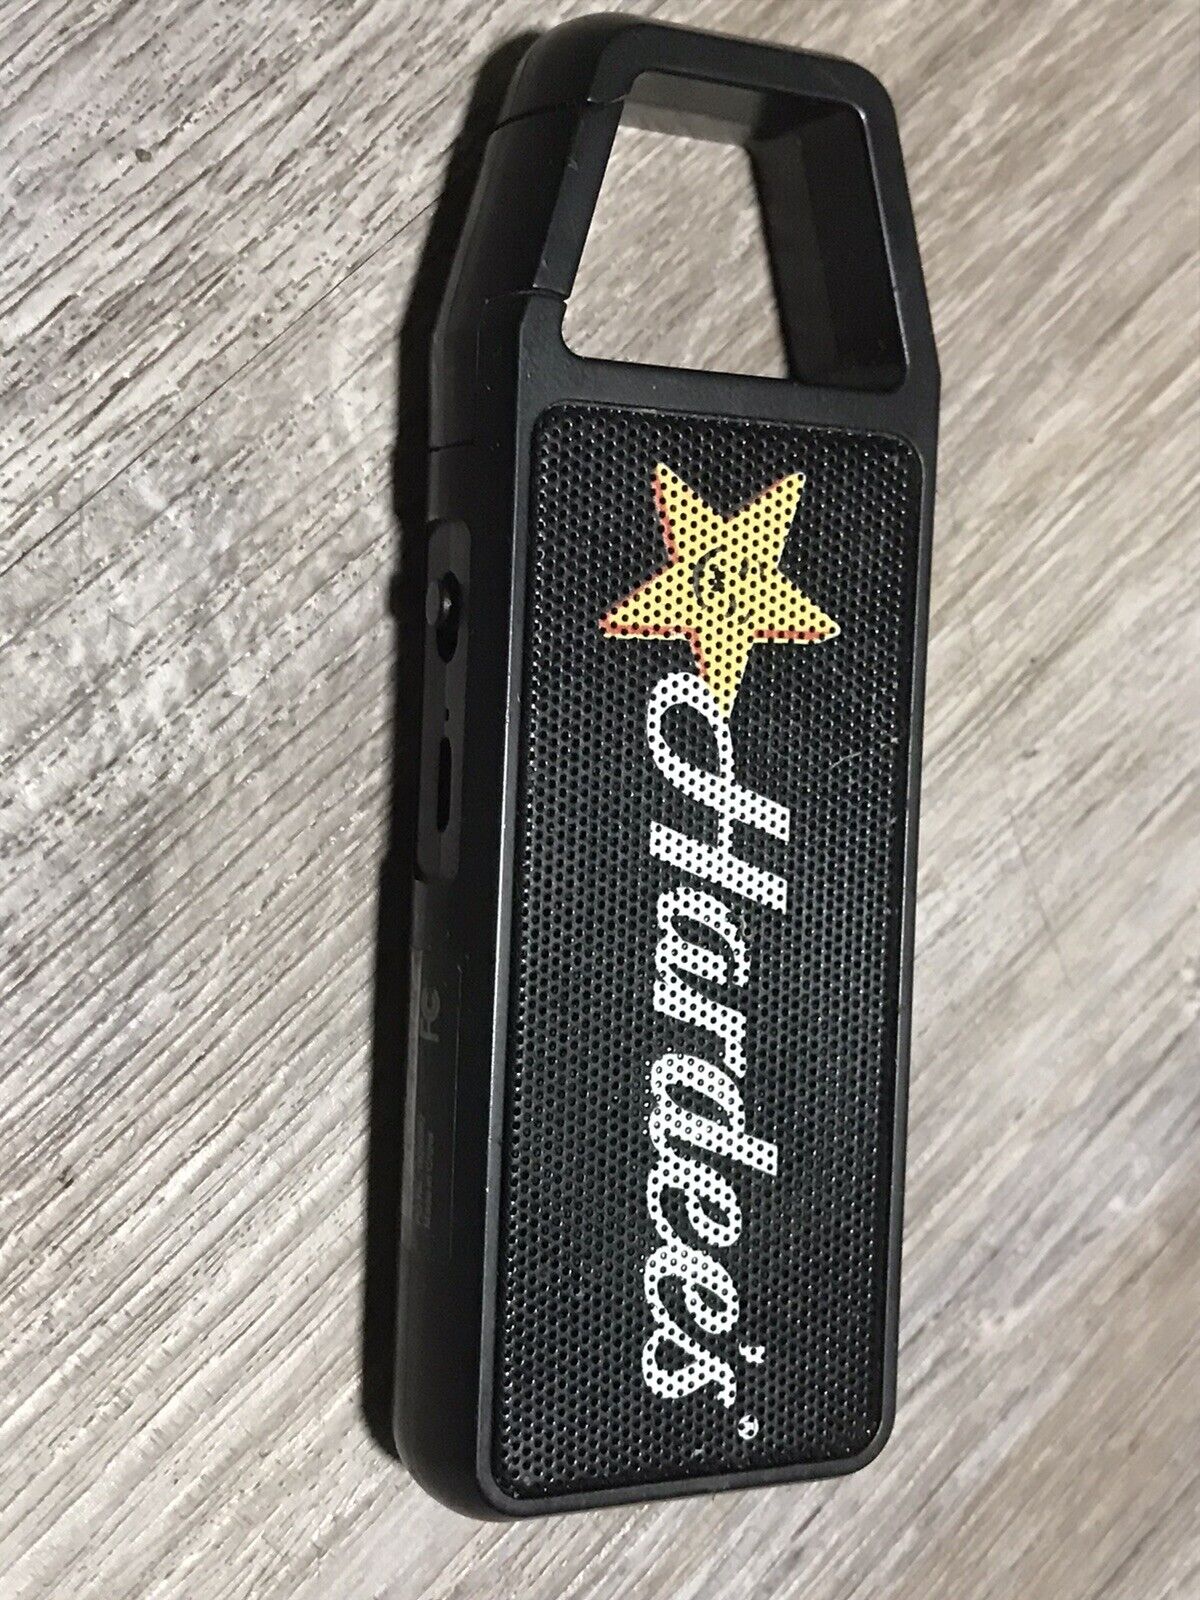 Hardee’s Restaurant Mini Speaker Keychain ( Decent For Size )